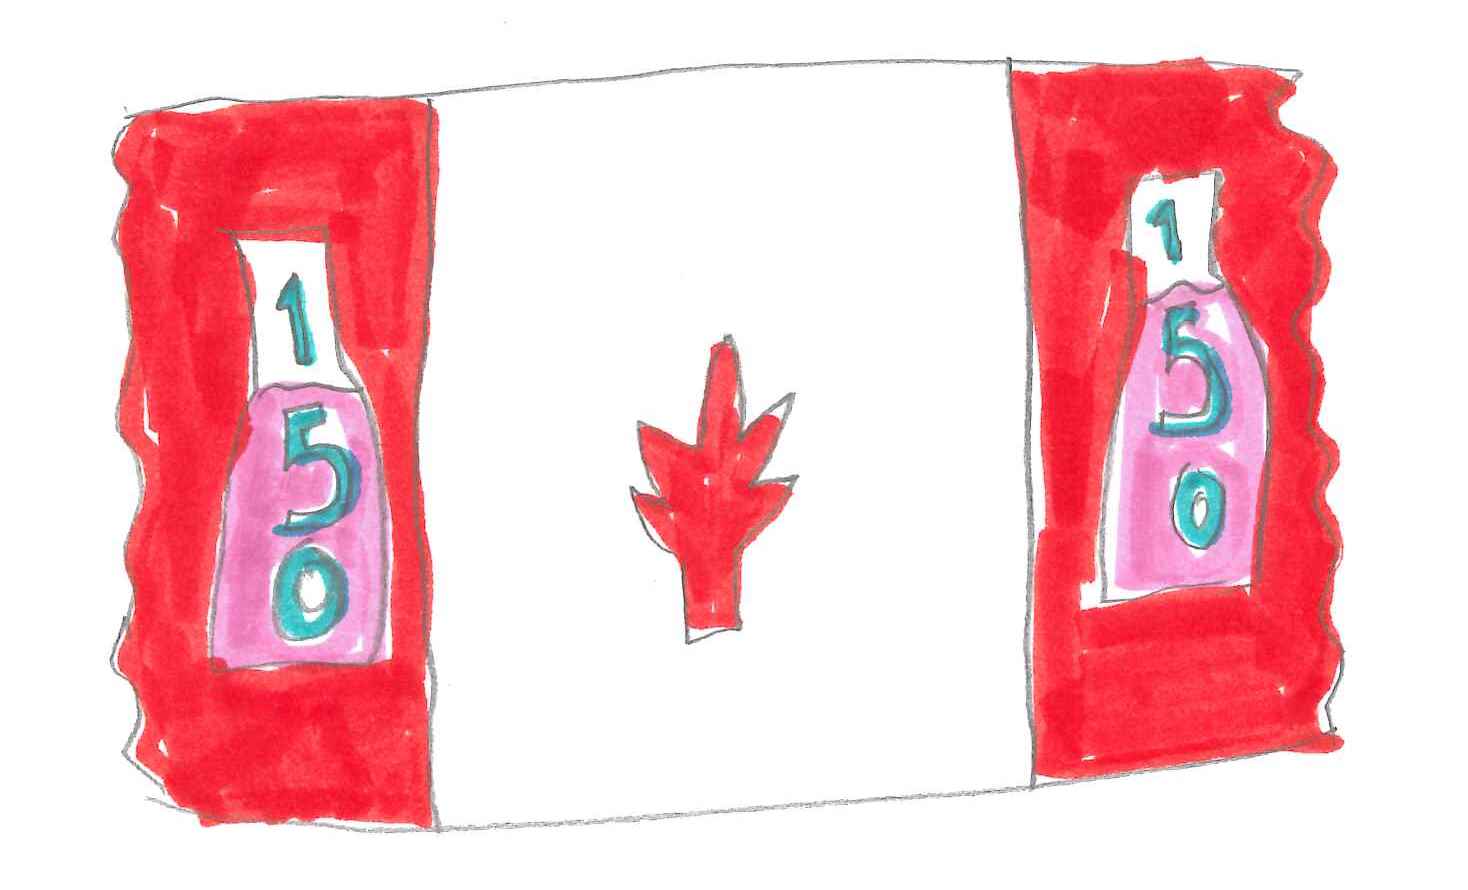 Third Special Mention: Riley C. Grade 3. "150 flag"